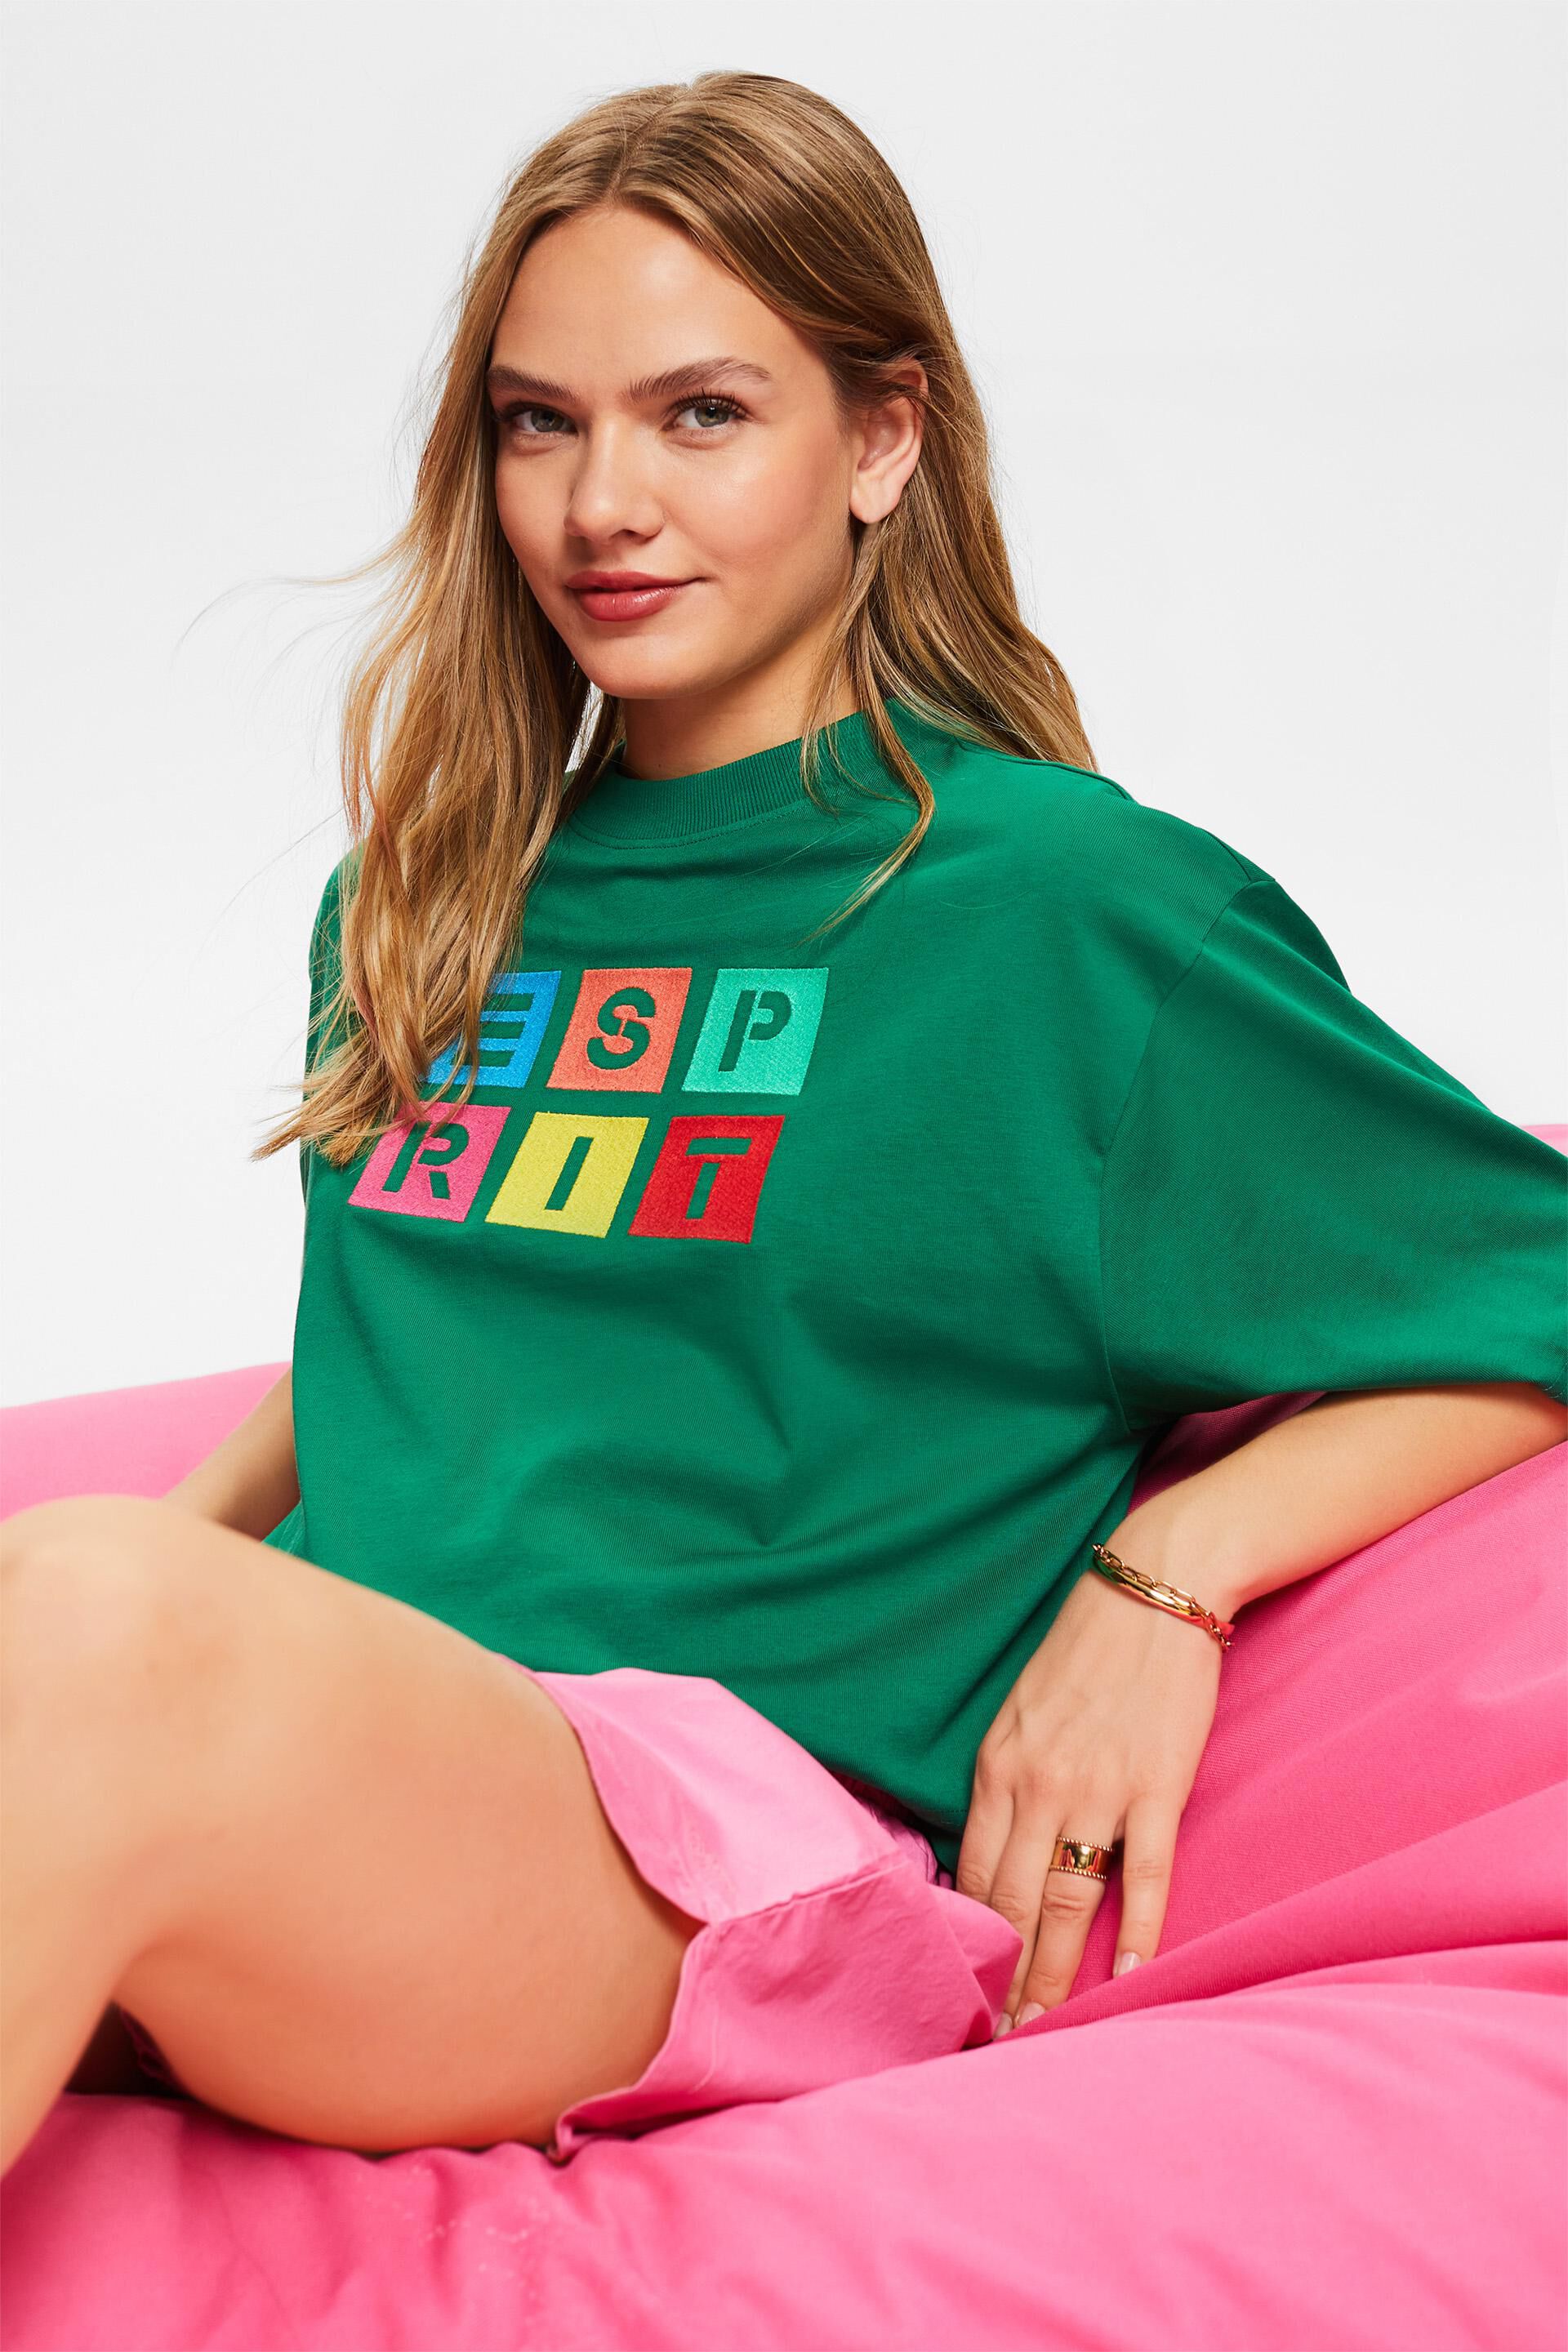 Esprit aufgesticktem % Logo, mit 100 T-Shirt Baumwolle